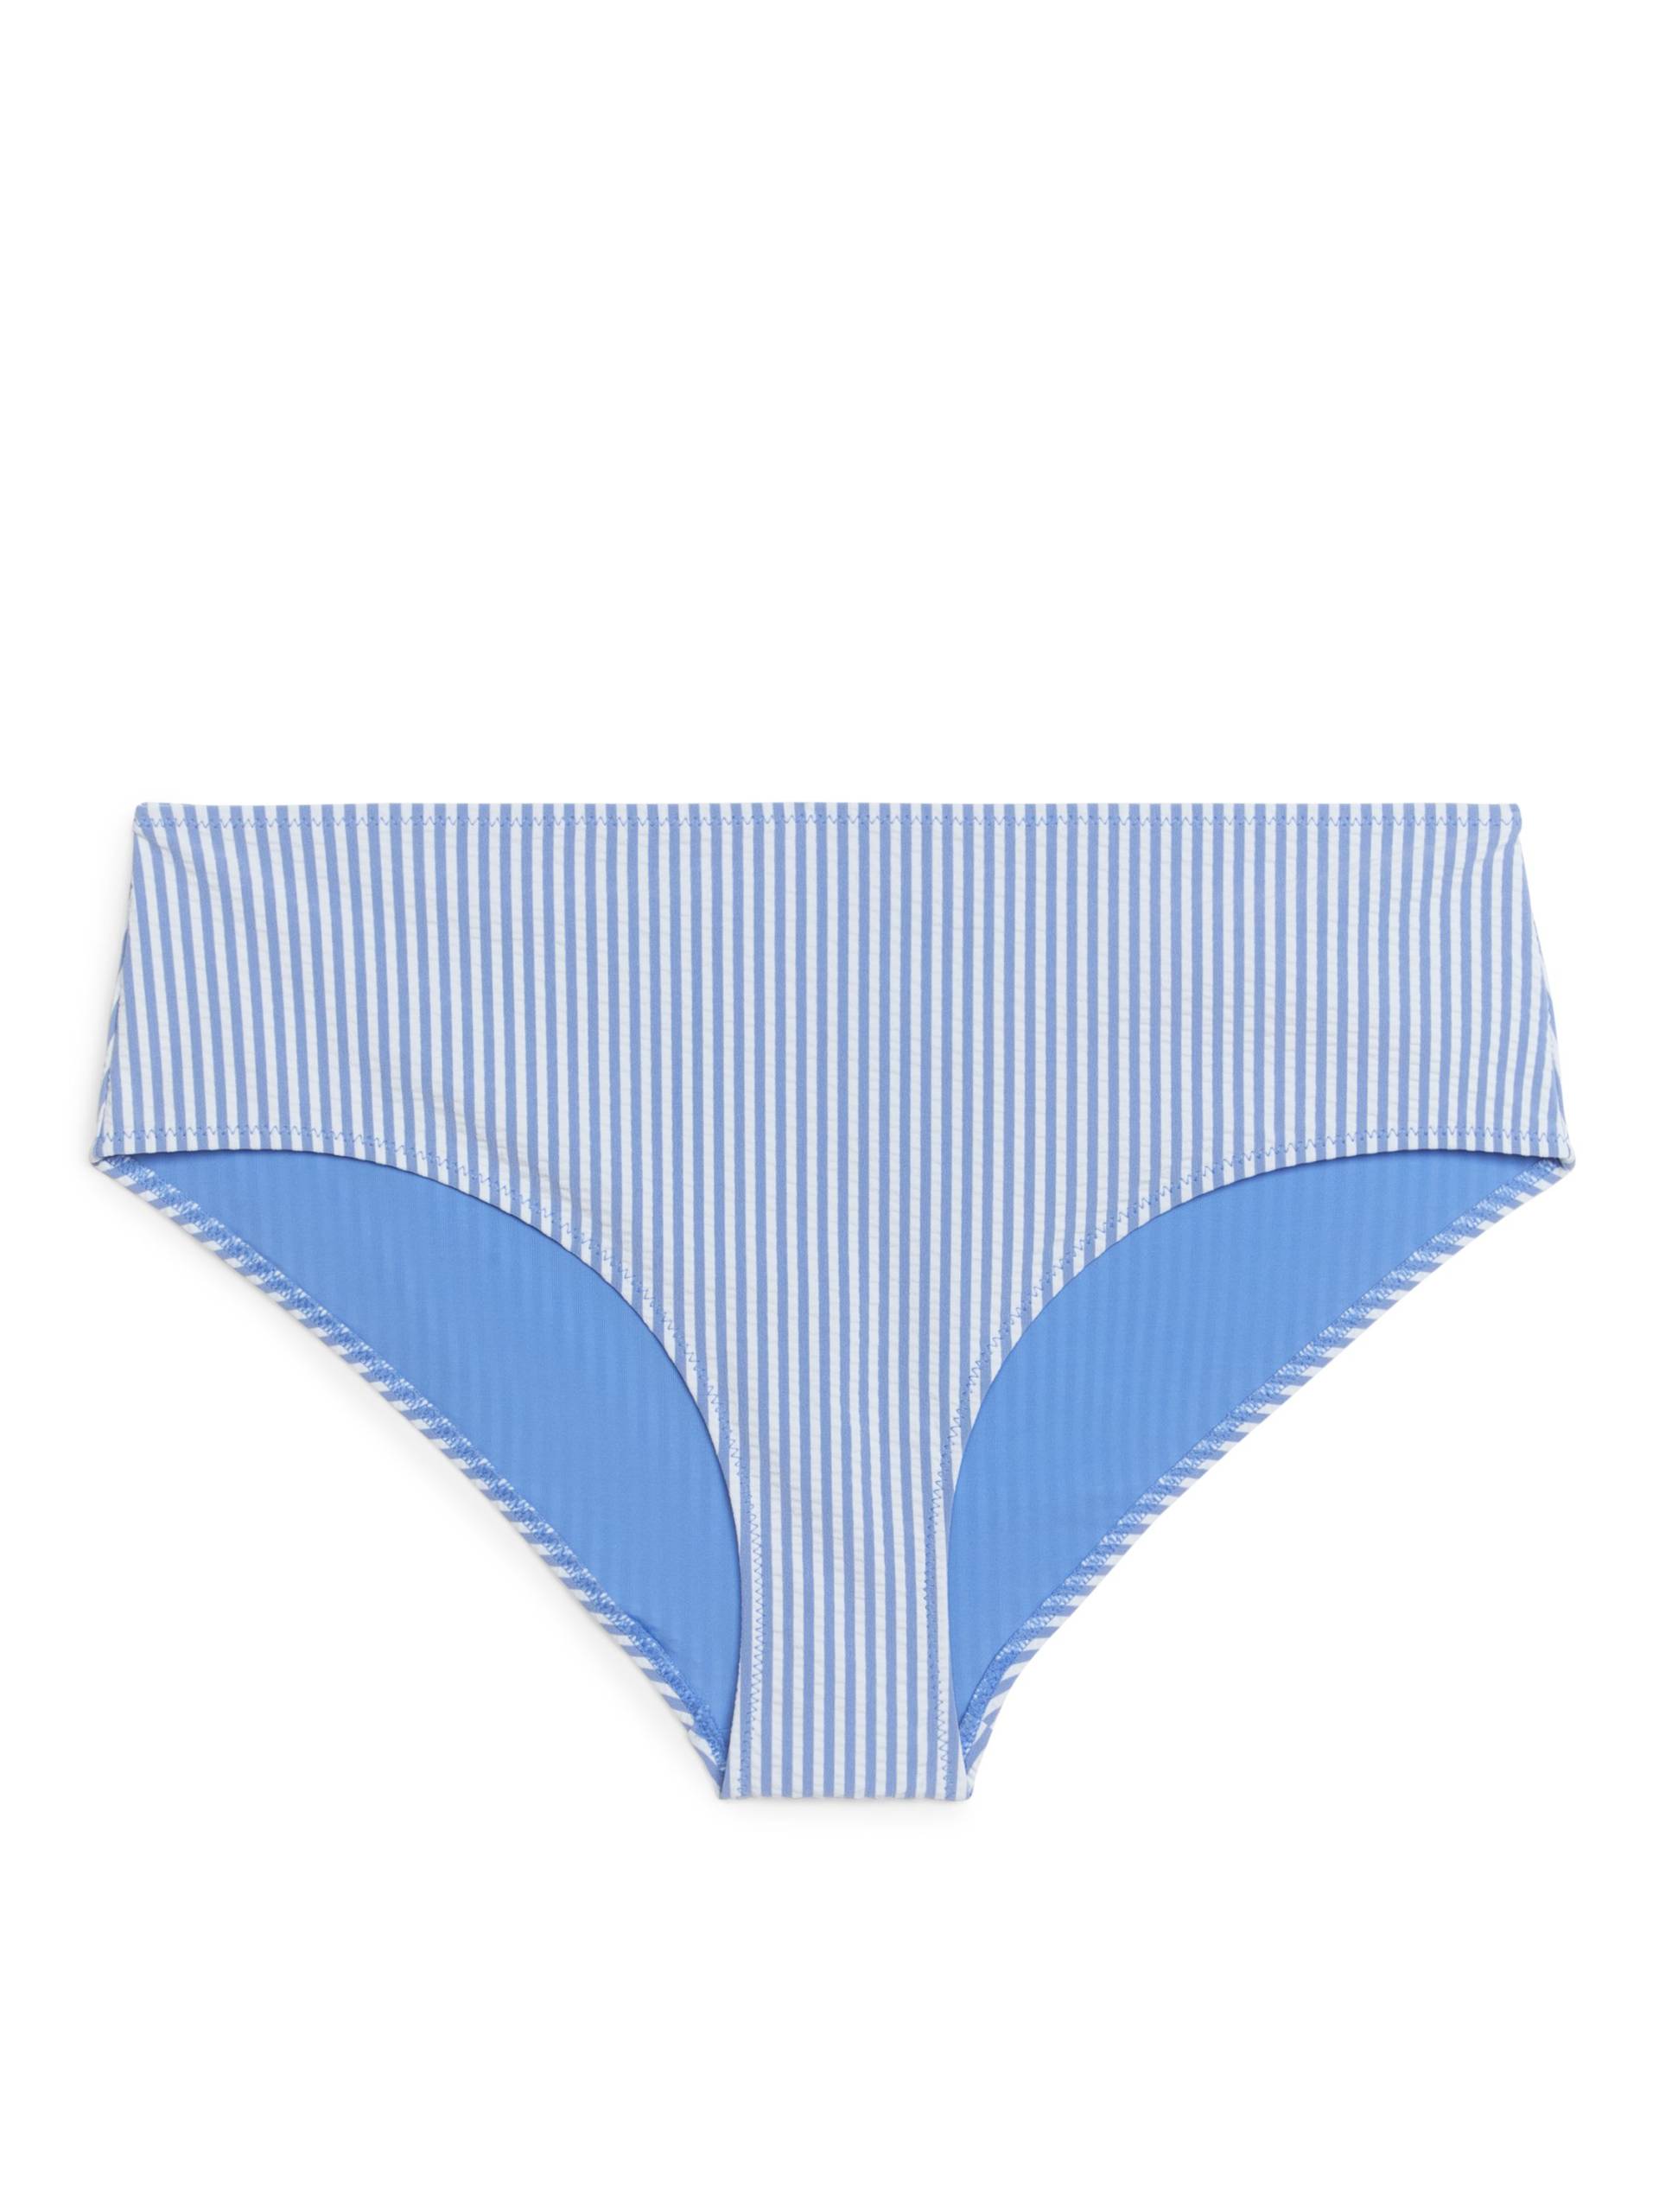 Arket Seersucker-Bikinihüfthose Blau/Weiß, Bikini-Unterteil in Größe 38. Farbe: Blue/white 002 von Arket